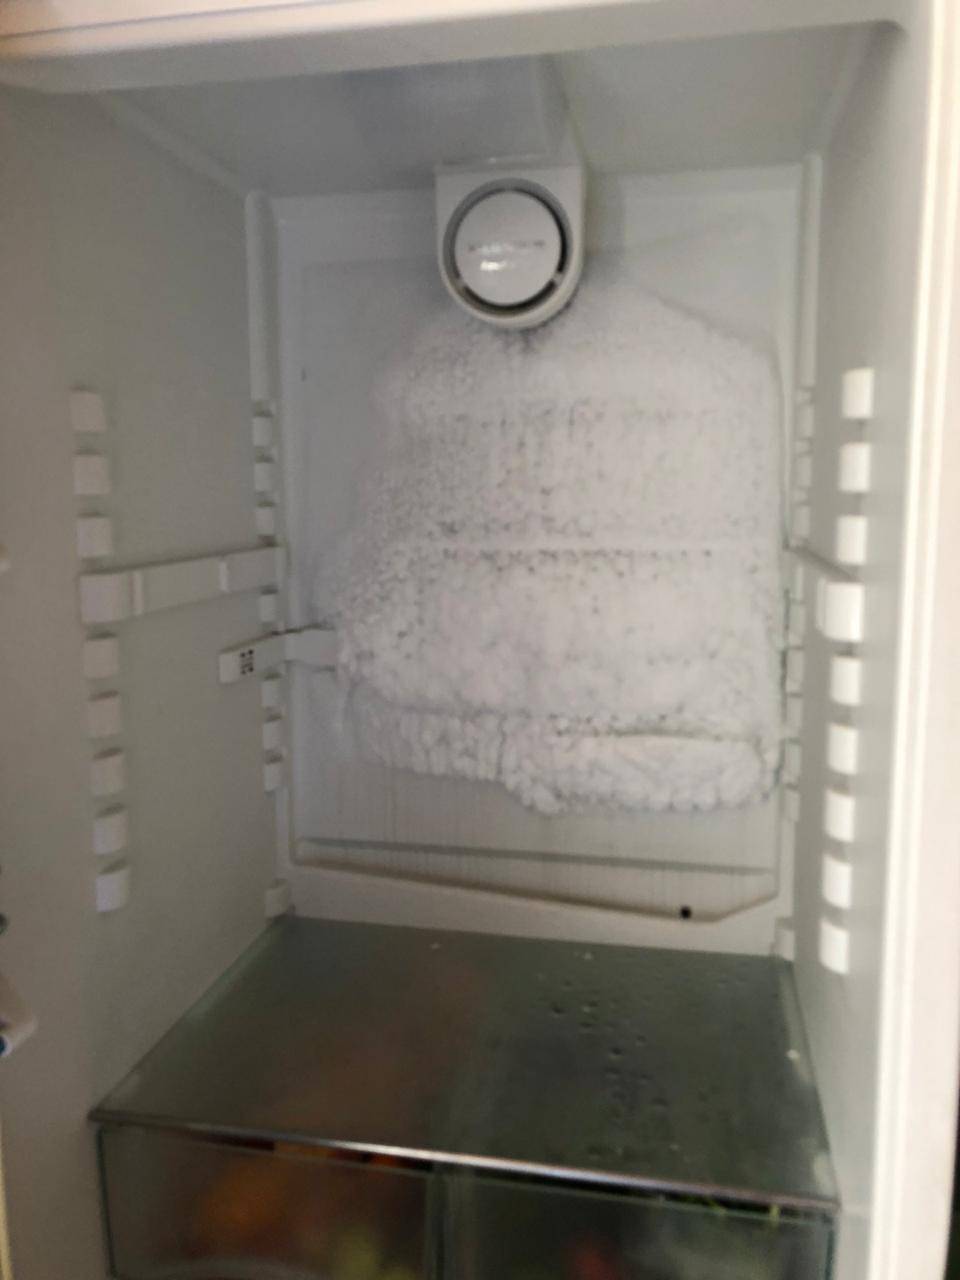 Почему на задней стенке холодильника образуются капли воды?